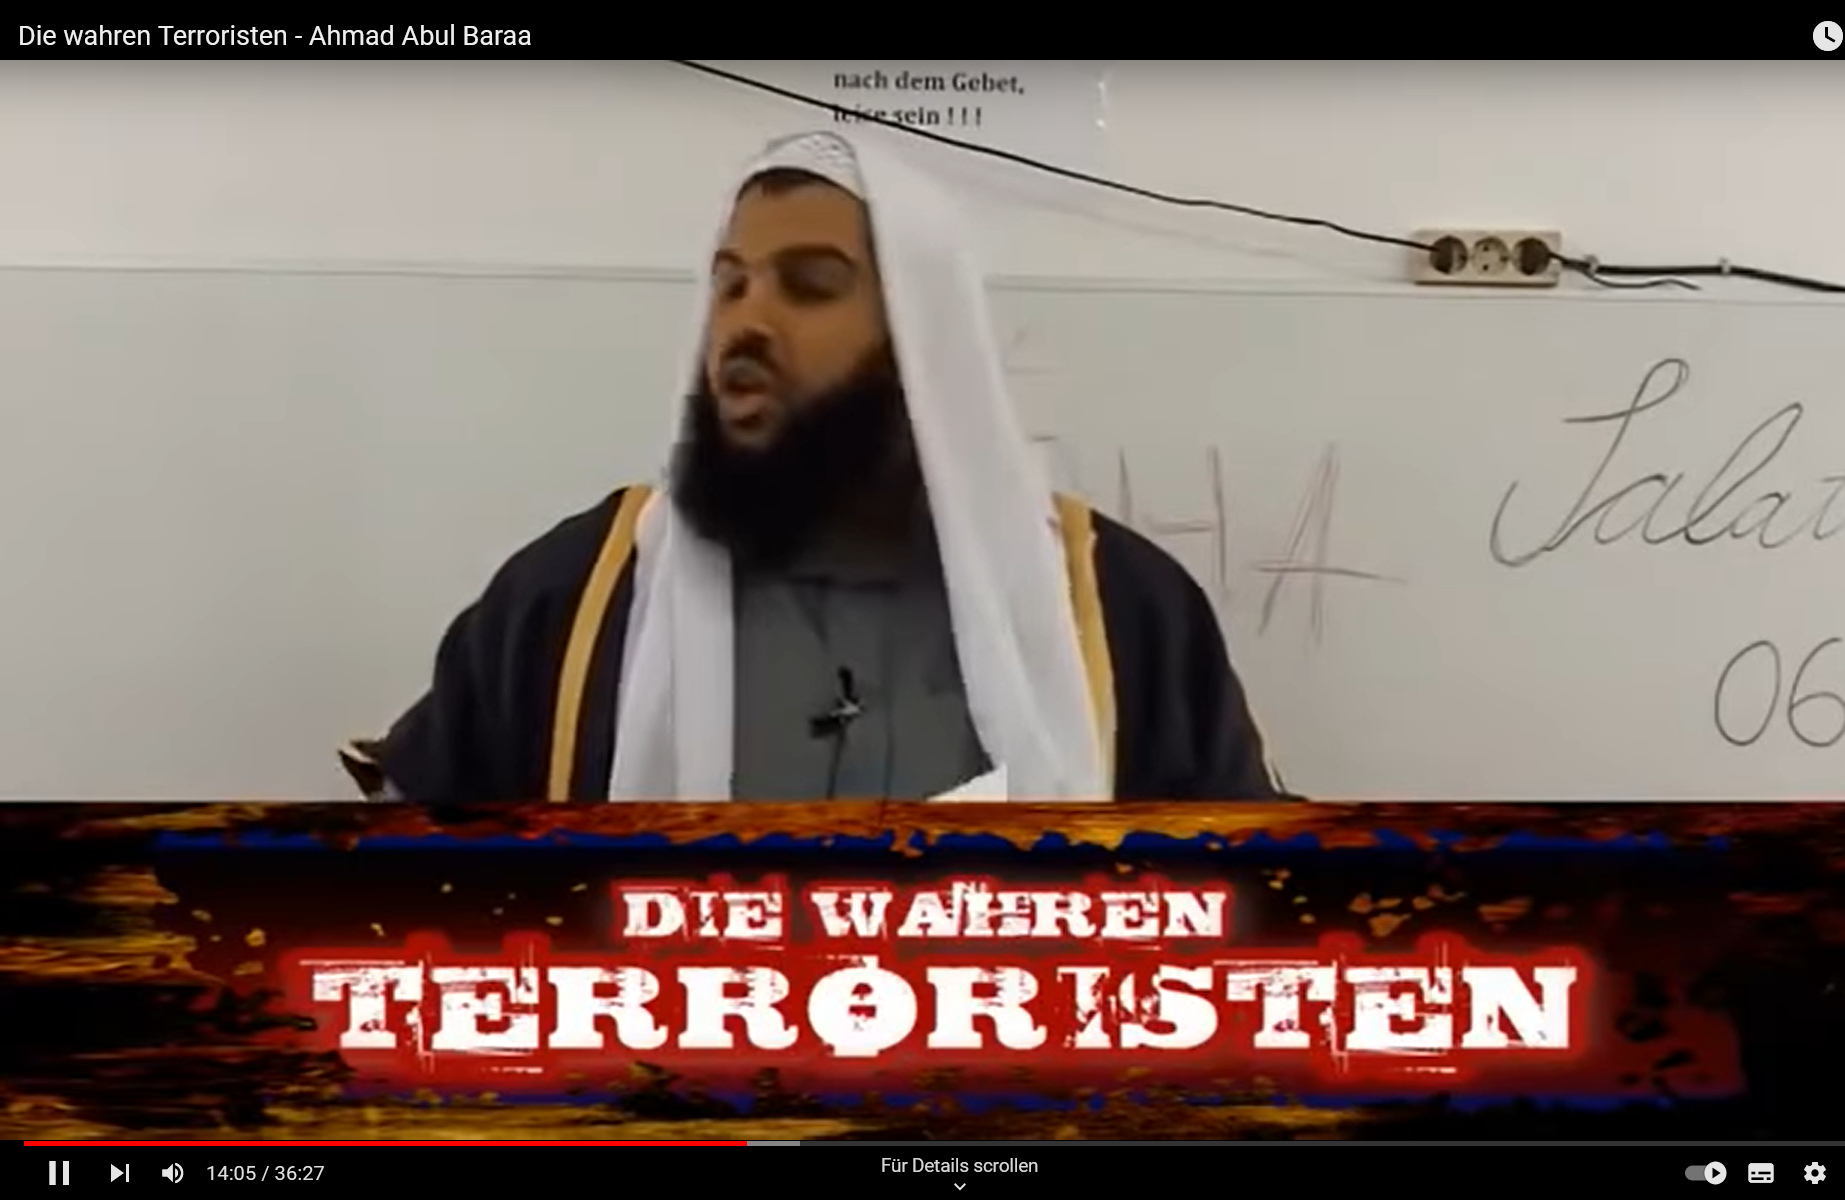 Screenshot aus dem Video »Die wahren Terroristen« von Ahmad Abul Baraa, der den Prediger zeigt